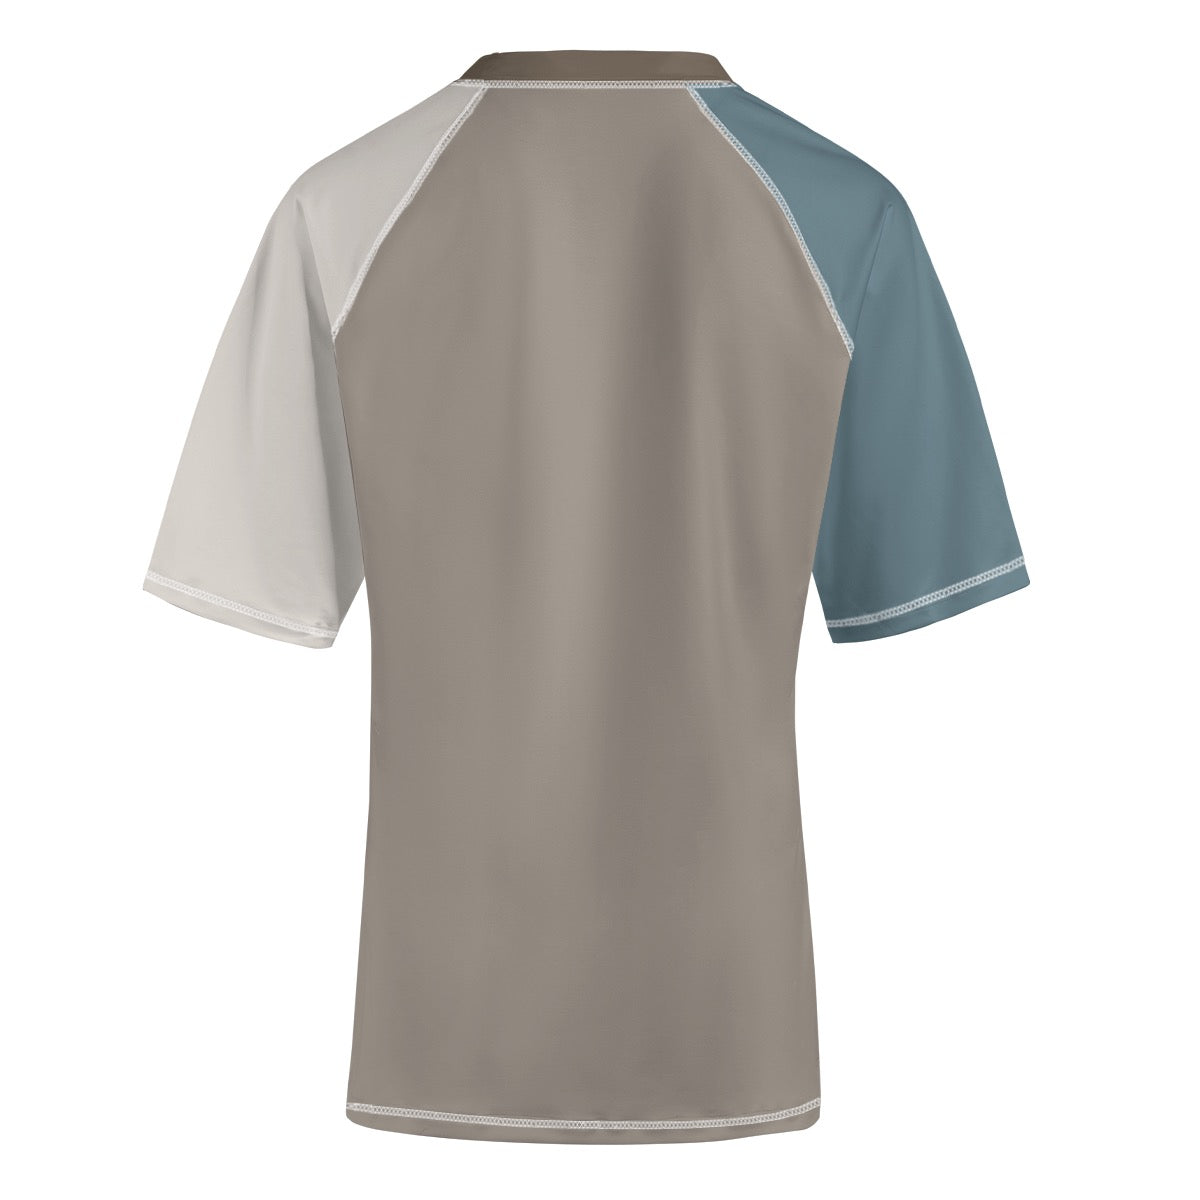 Japan Gate -- Unisex Yoga Sports Short Sleeve T-Shirt